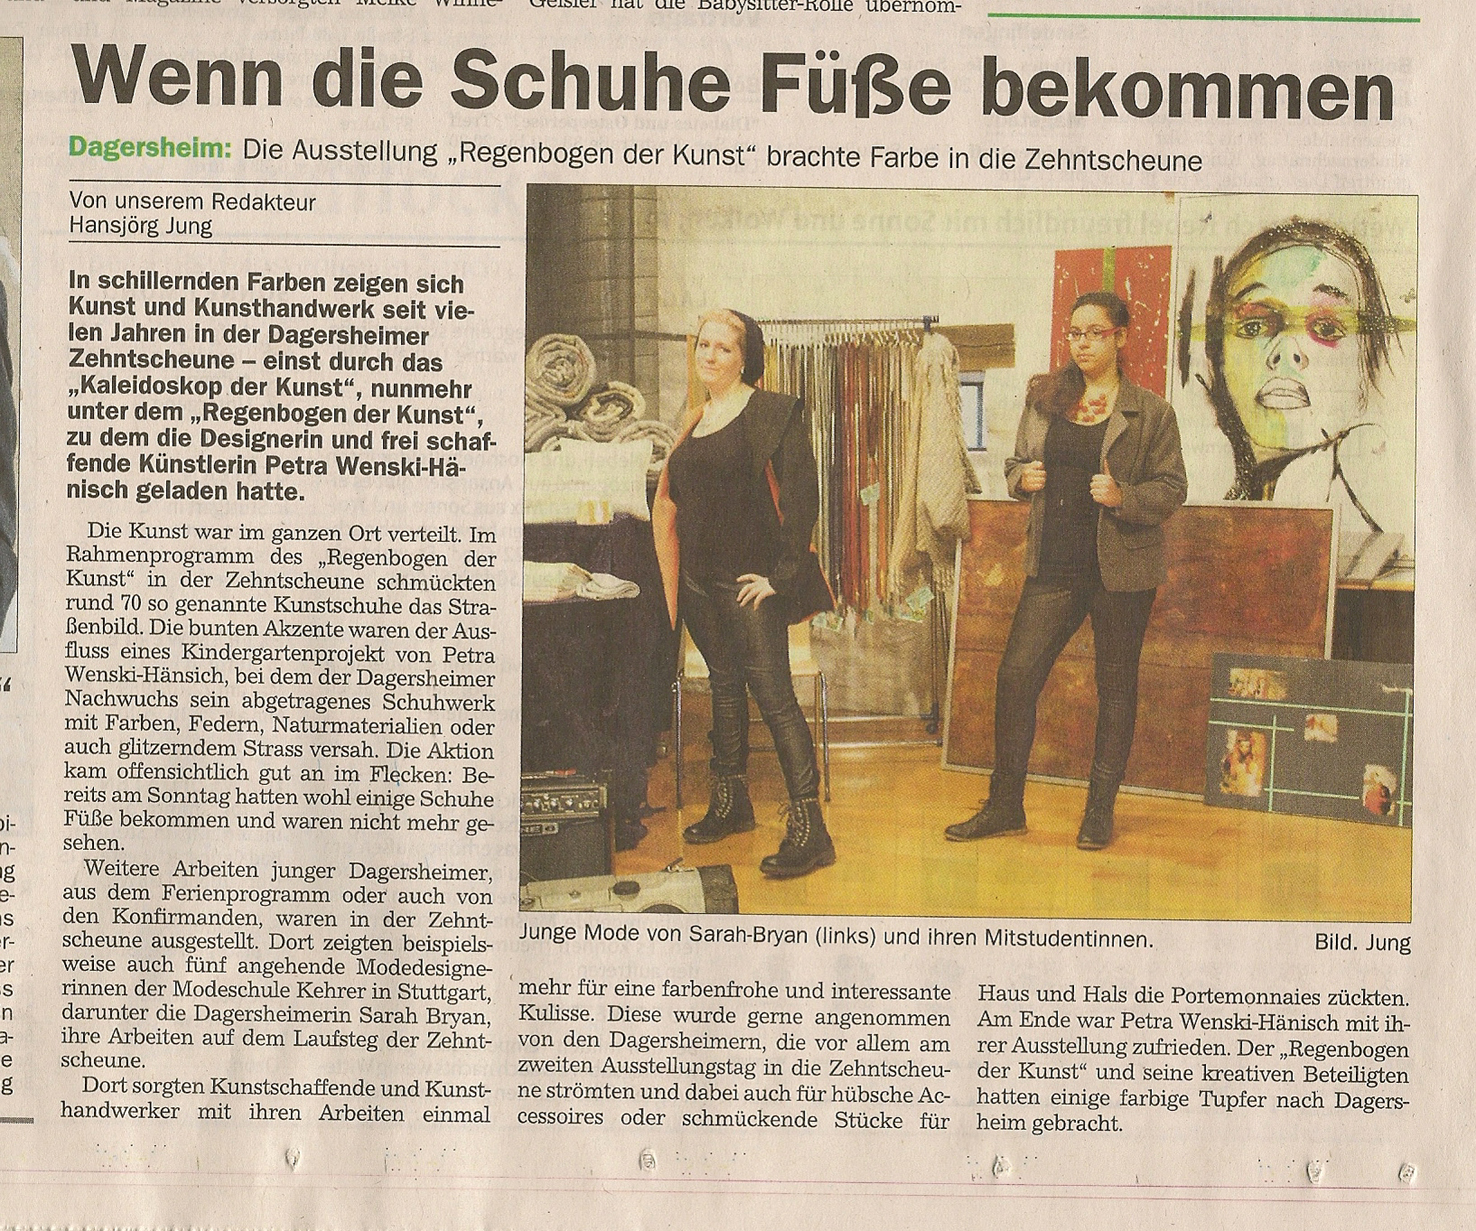 Artikel in der Kreiszeitung Böblinger Bote zum Regenbogen der Kunst in der Zehntscheune in Dagersheim 2014.